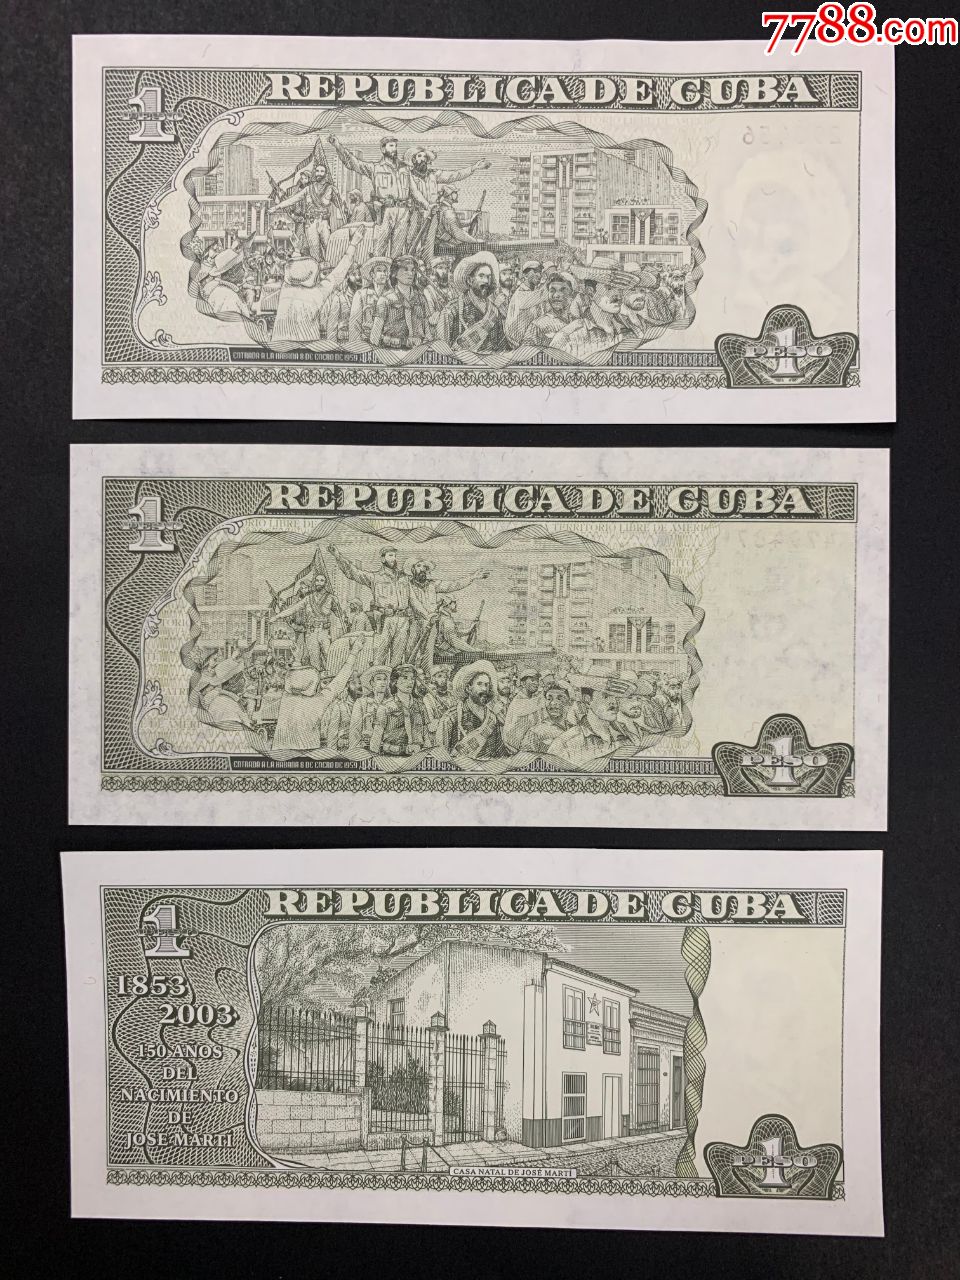 海外纸币专场:古巴纸币共6种不同(全场10元起拍)